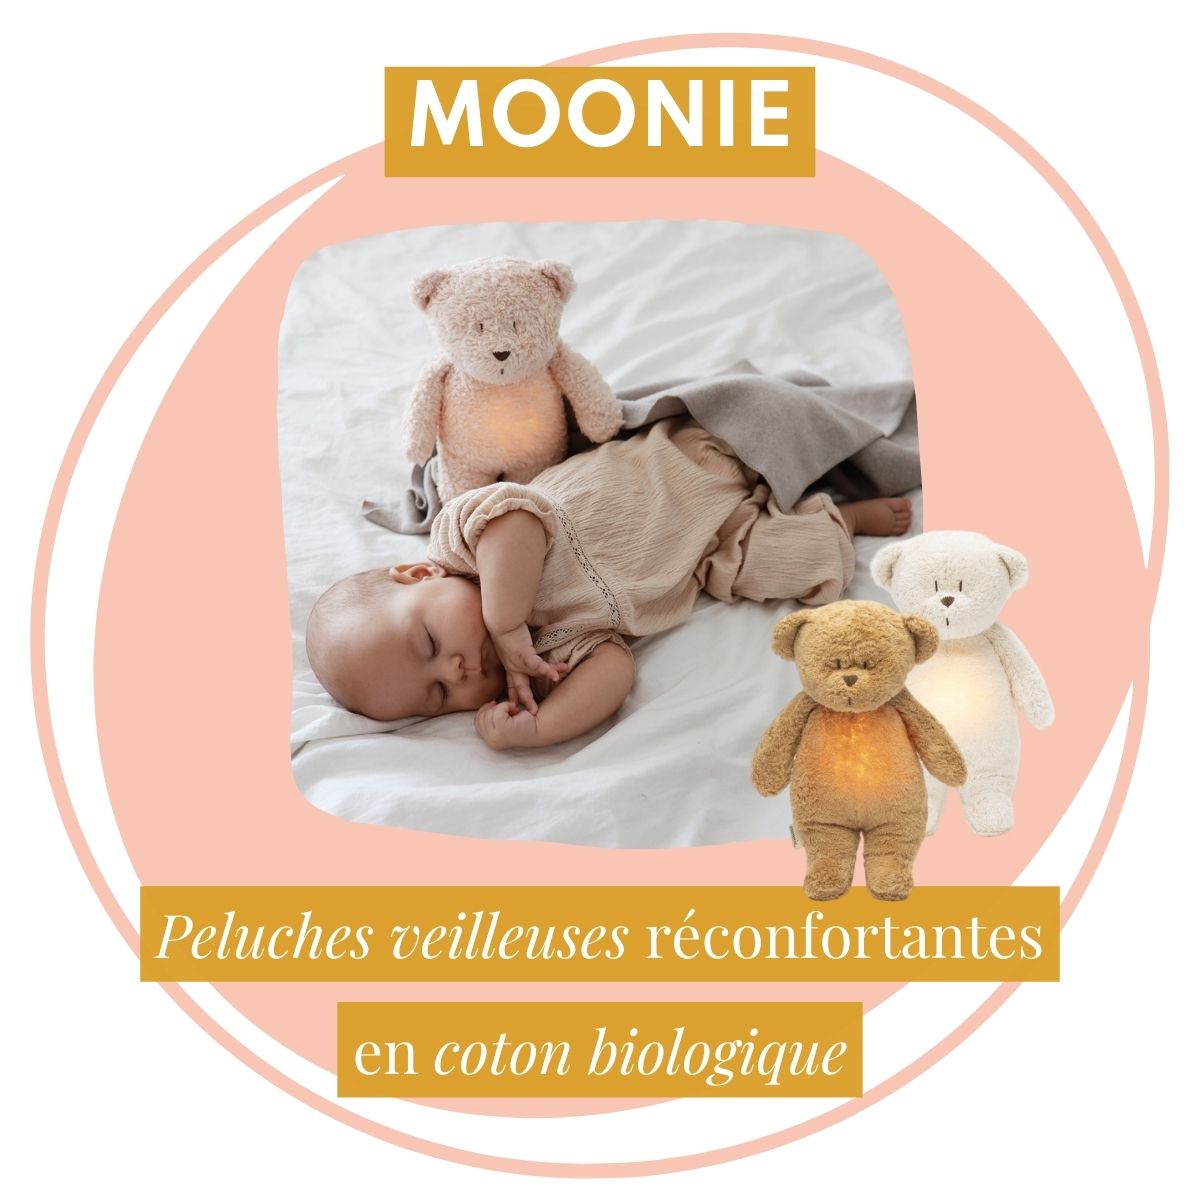 Moonie, peluches veilleuses pour bébé